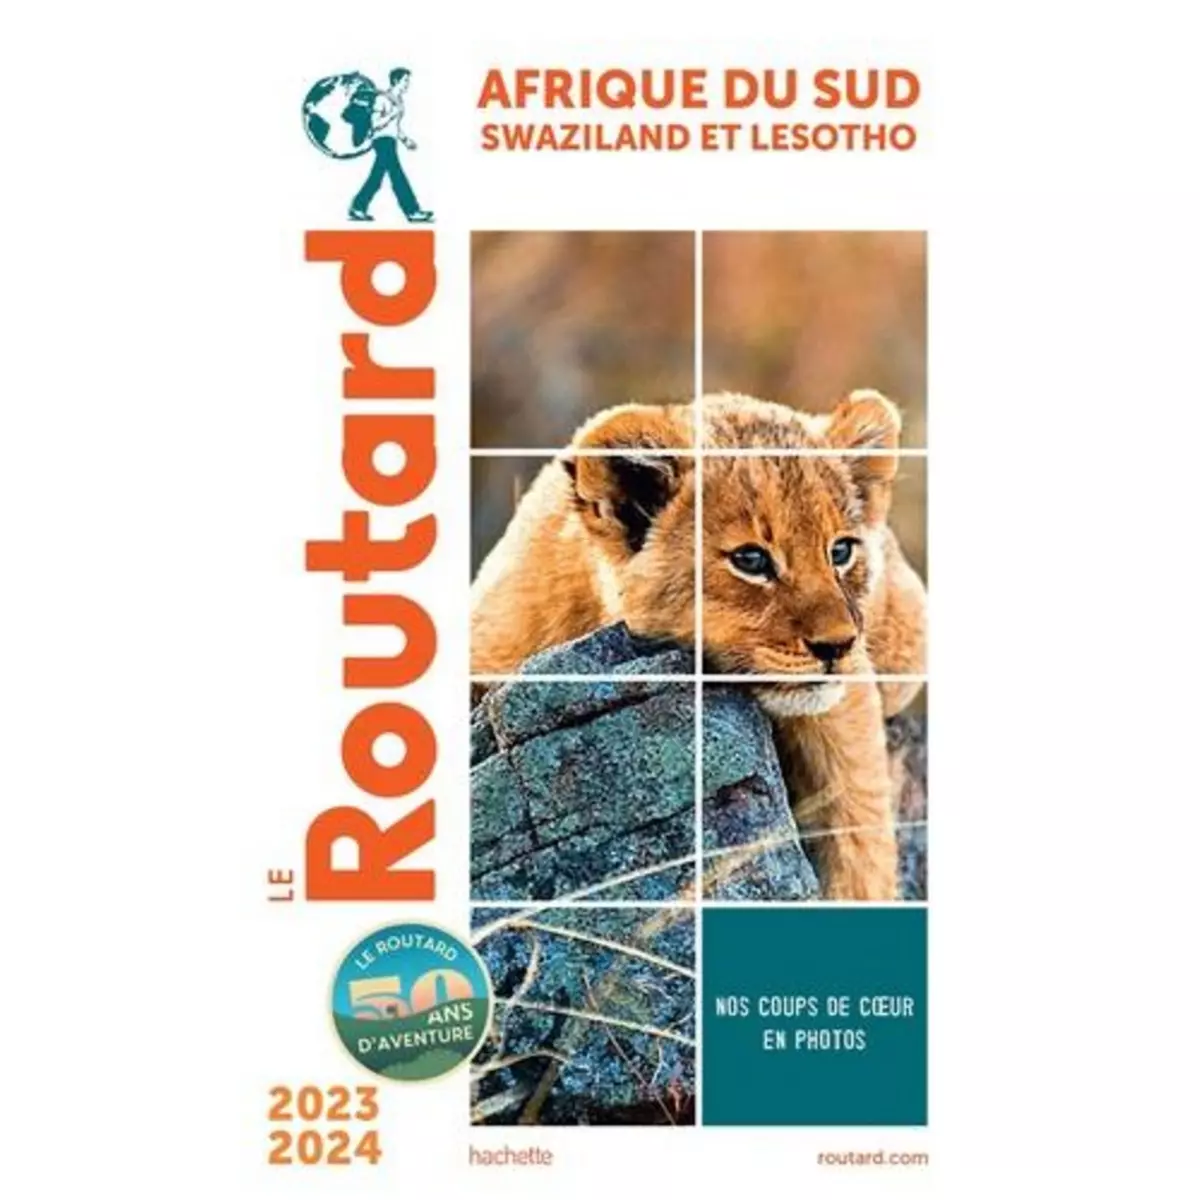  AFRIQUE DU SUD. SWAZILAND ET LESOTHO, EDITION 2023-2024, Le Routard